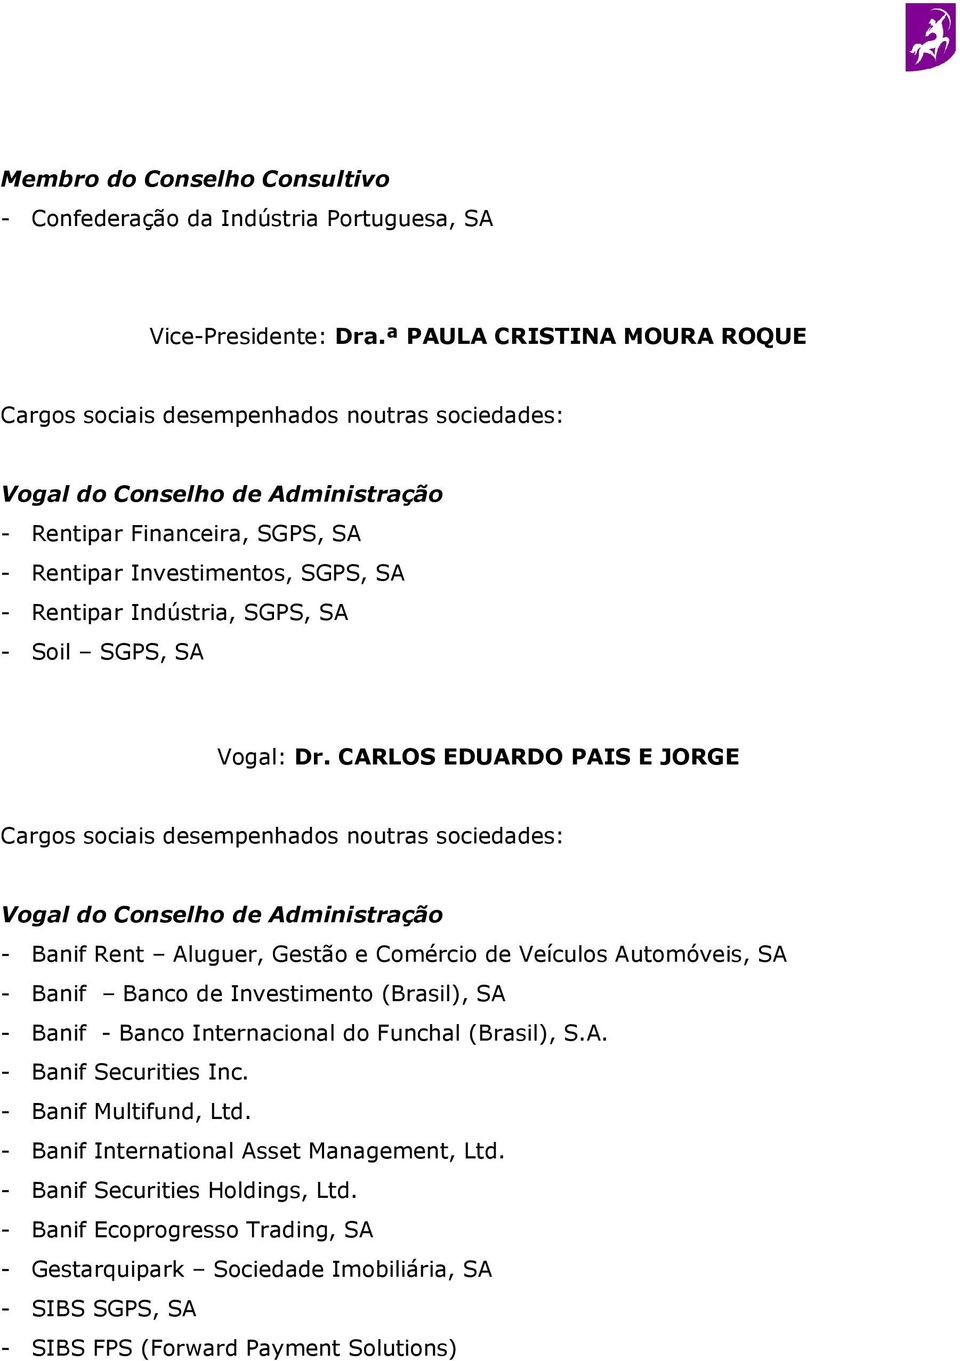 CARLOS EDUARDO PAIS E JORGE - Banif Rent Aluguer, Gestão e Comércio de Veículos Automóveis, SA - Banif Banco de Investimento (Brasil), SA - Banif - Banco Internacional do